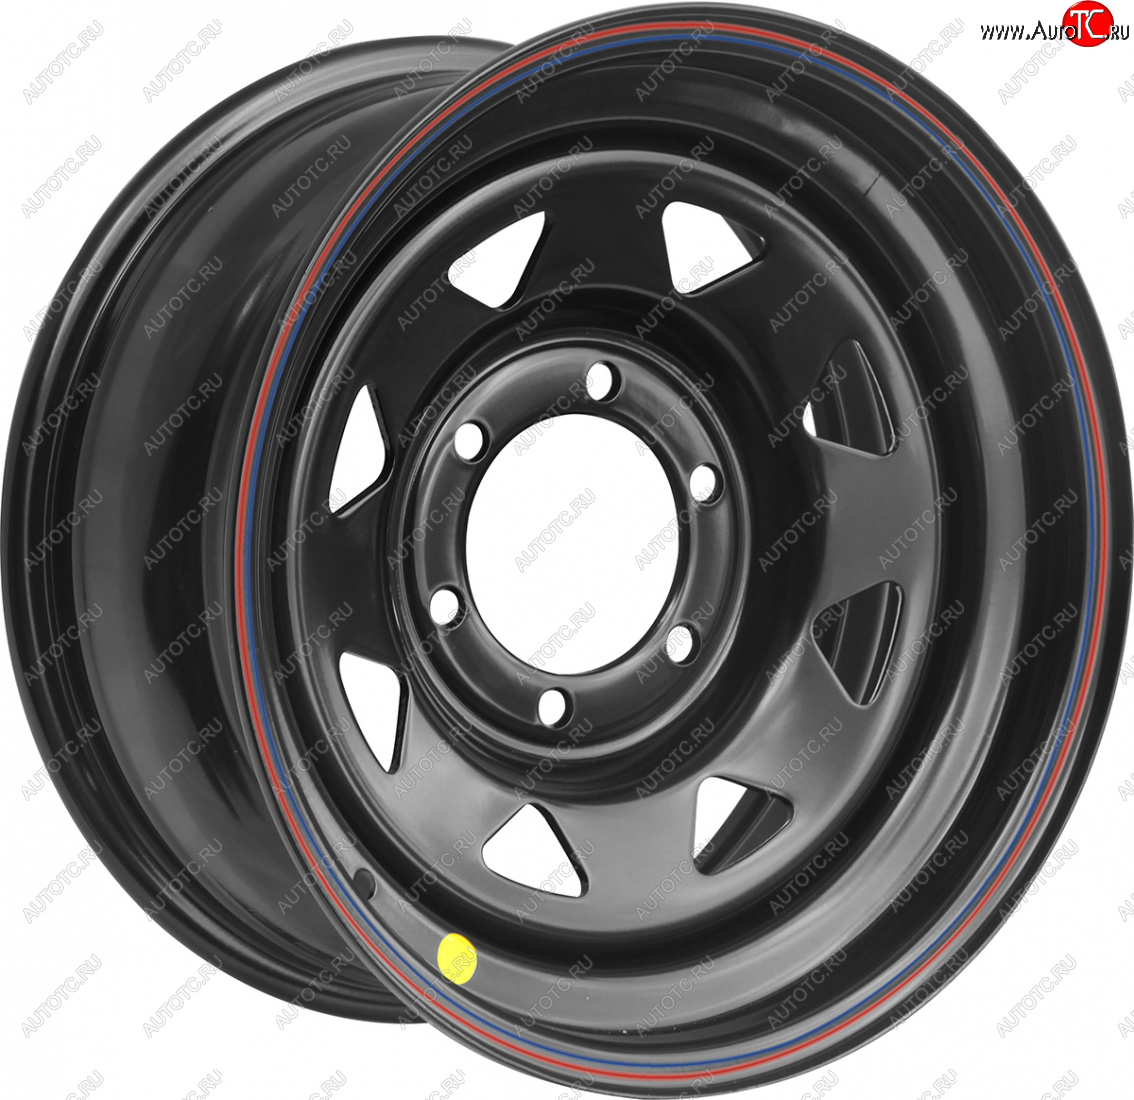 4 399 р. Штампованый диск OFF-ROAD Wheels (стальной усиленный, треугольник мелкий - черный). 7.0 x 16 Hyundai Galloper 5 дв. (1998-2003) 6x139.7xDIA110.0xET0.0 